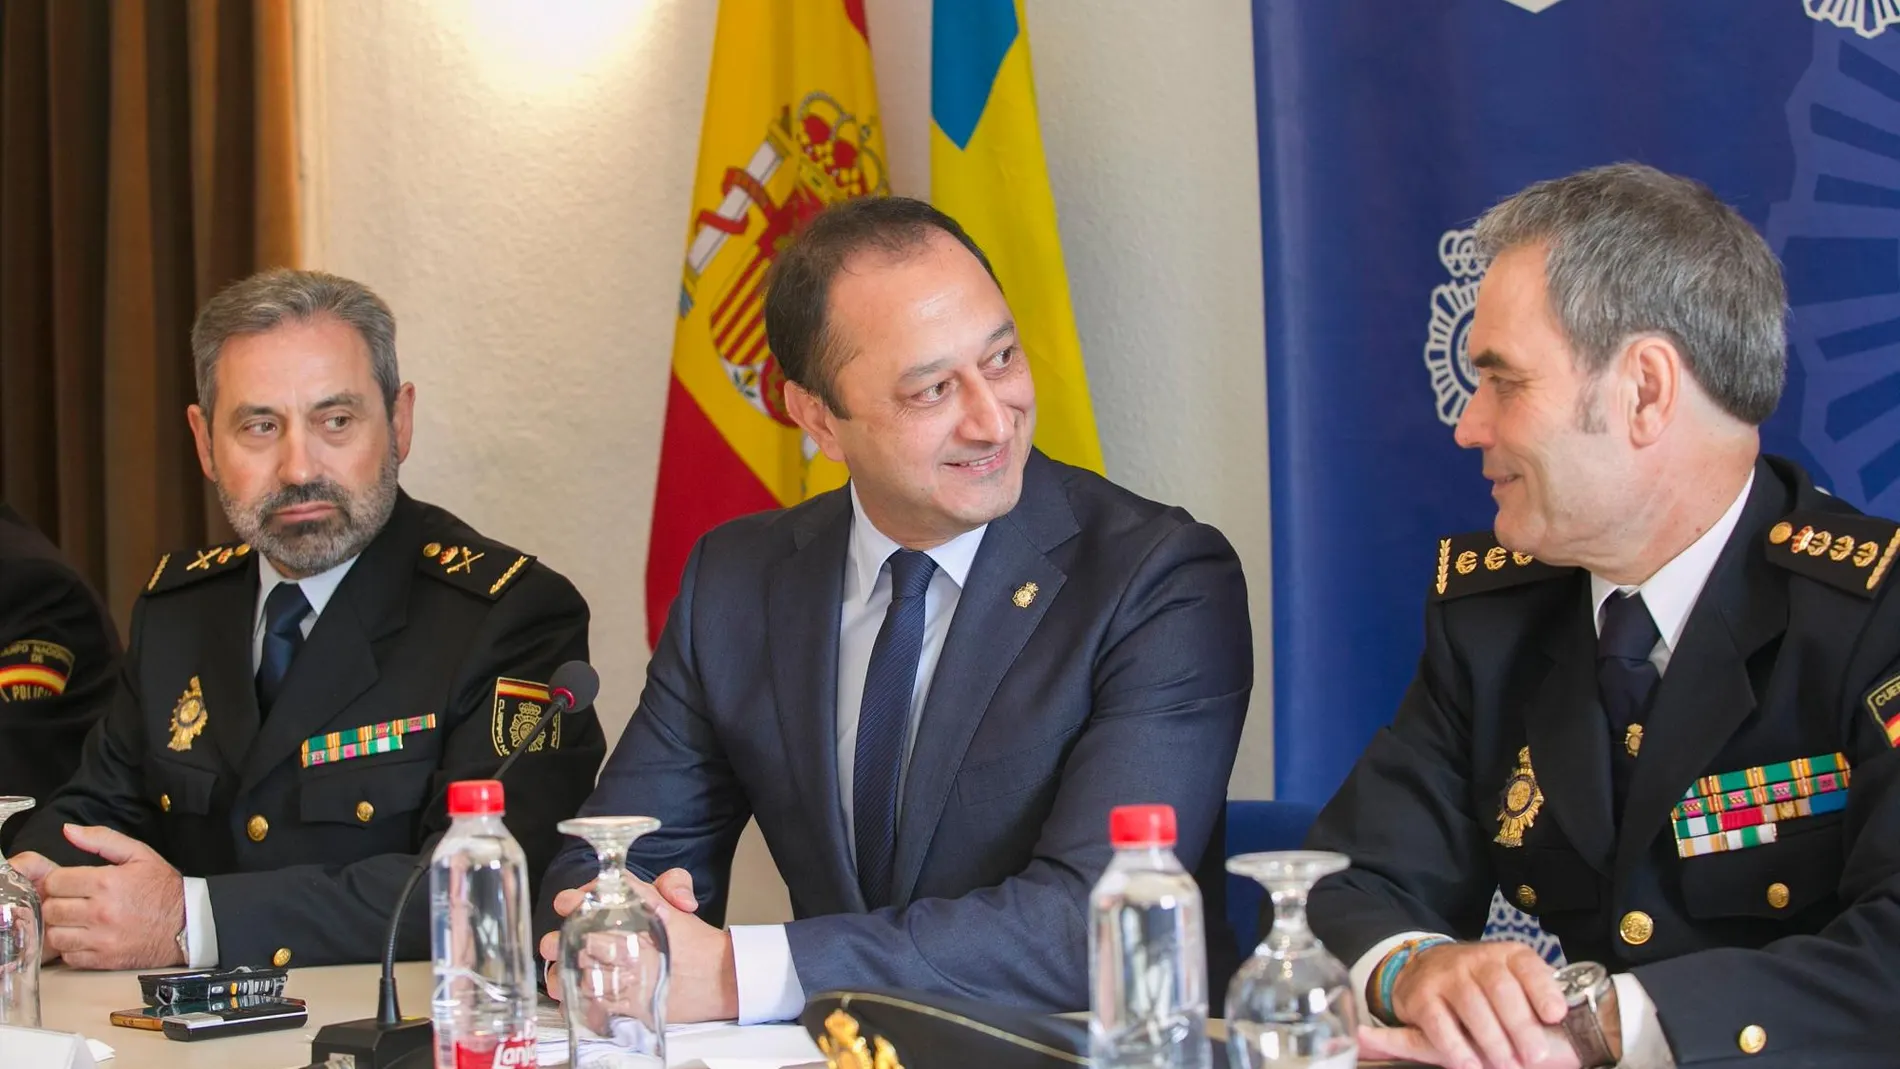 El delegado del Gobierno en Andalucía, junto a mandos policiales / Foto: Efe